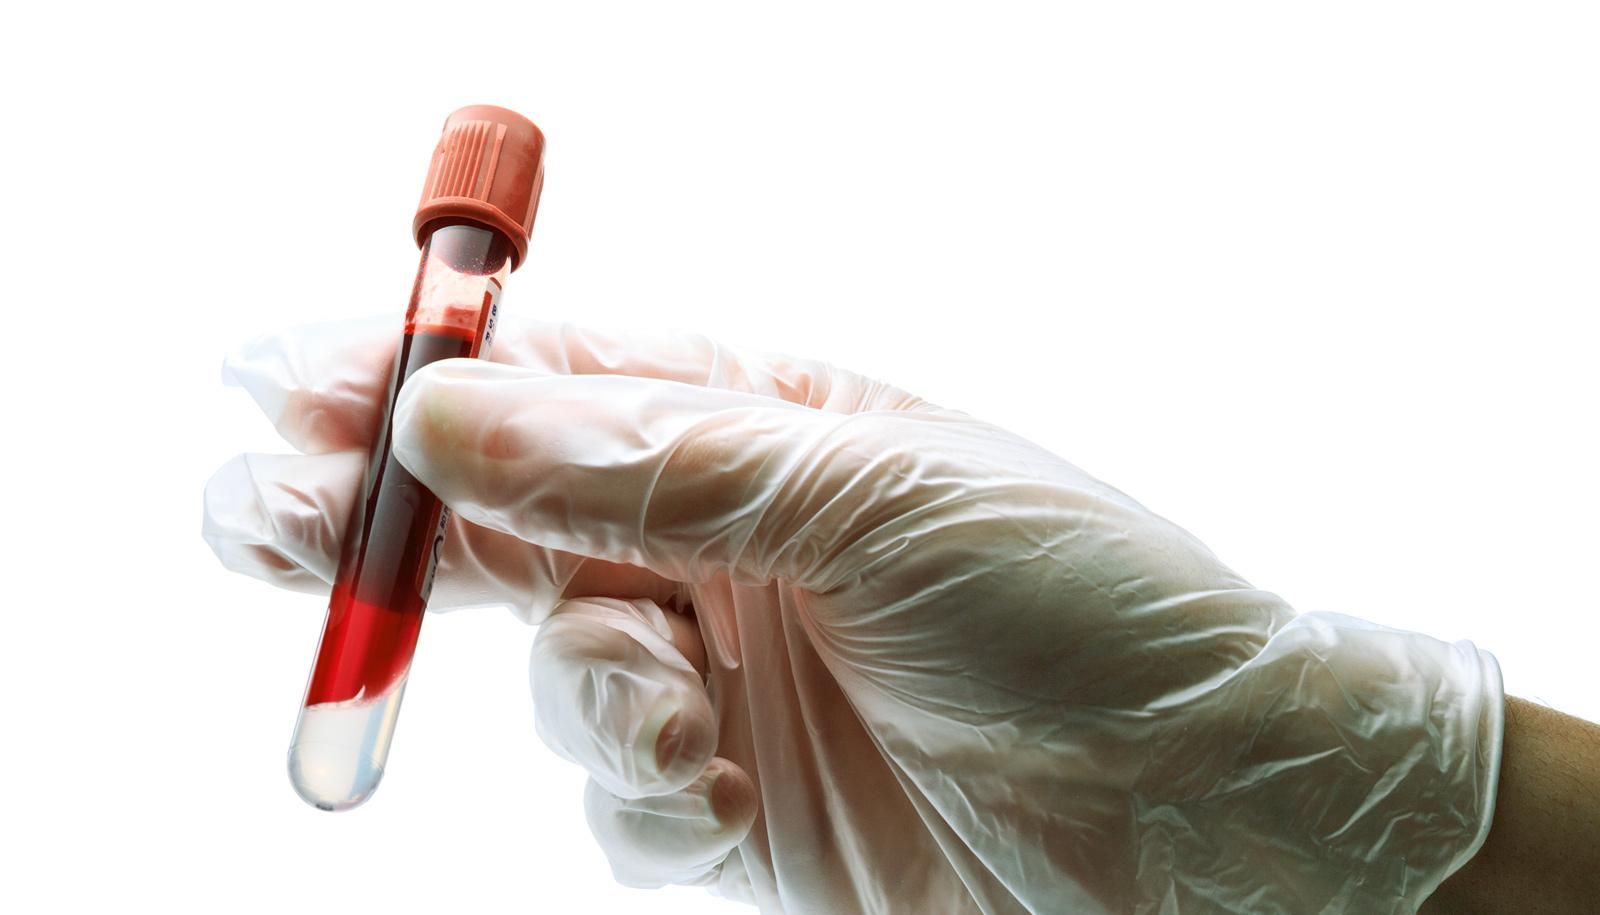 Новый анализ крови точно определяет более 20 типов рака
